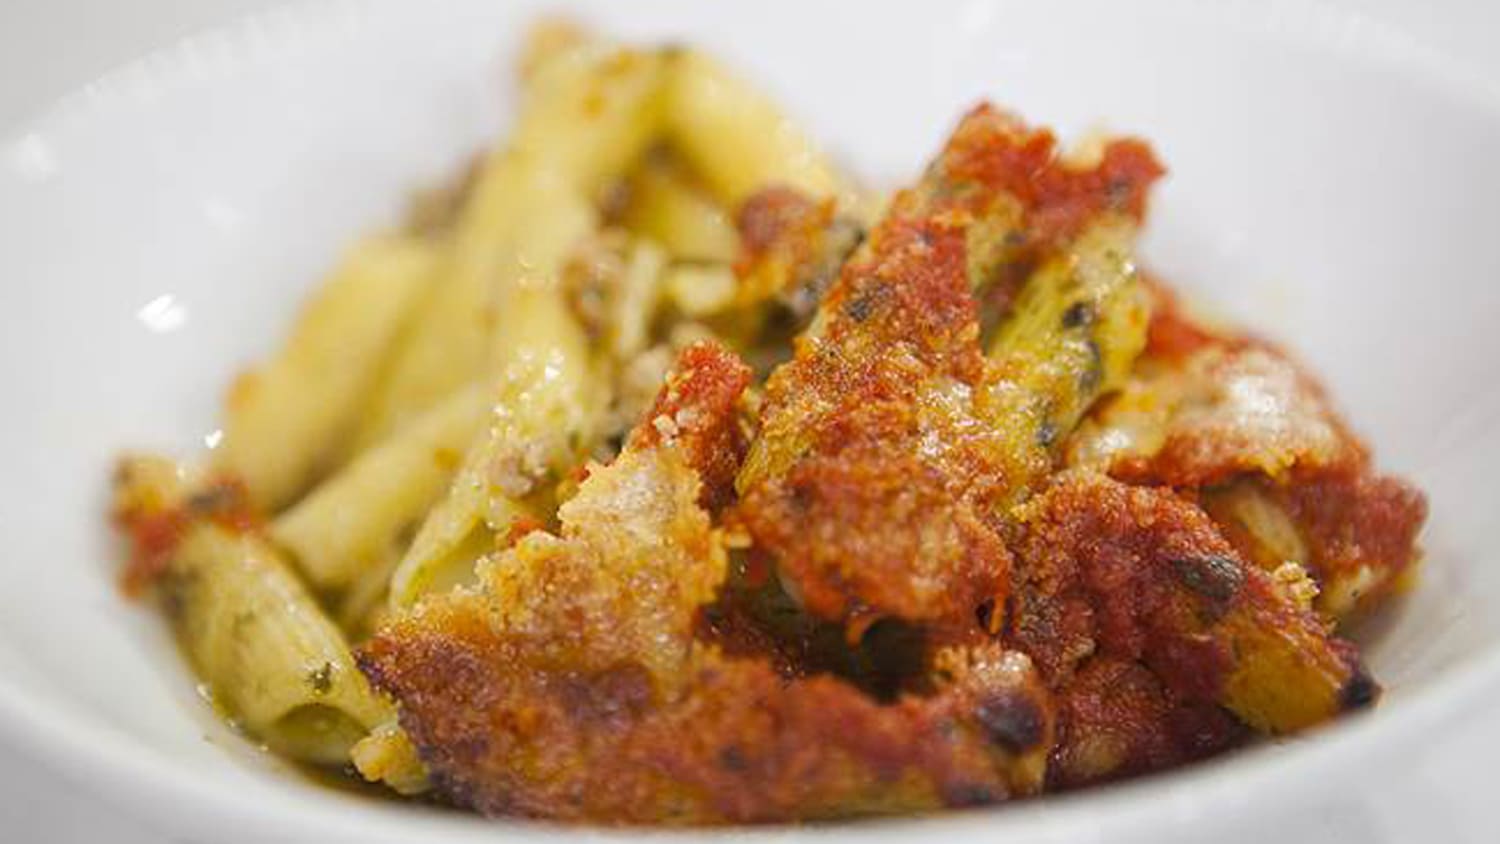 Giada De Laurentiis' baked pesto pasta casserole - TODAY.com